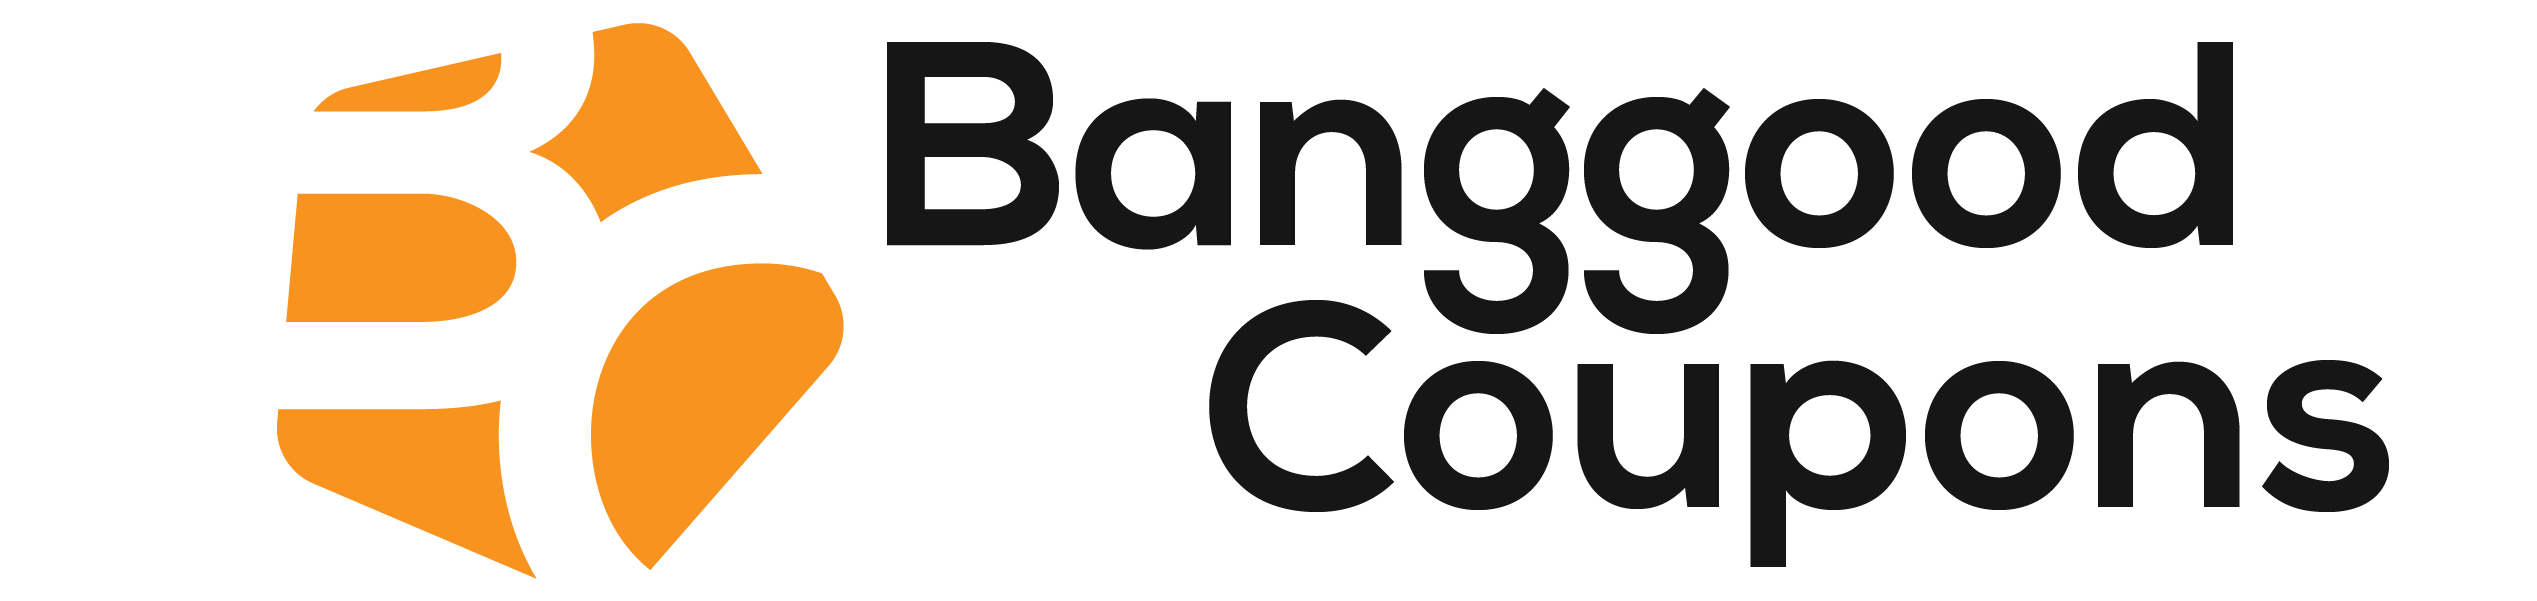 Banggood Logo - Banggood.com Archives - Banggood Coupons